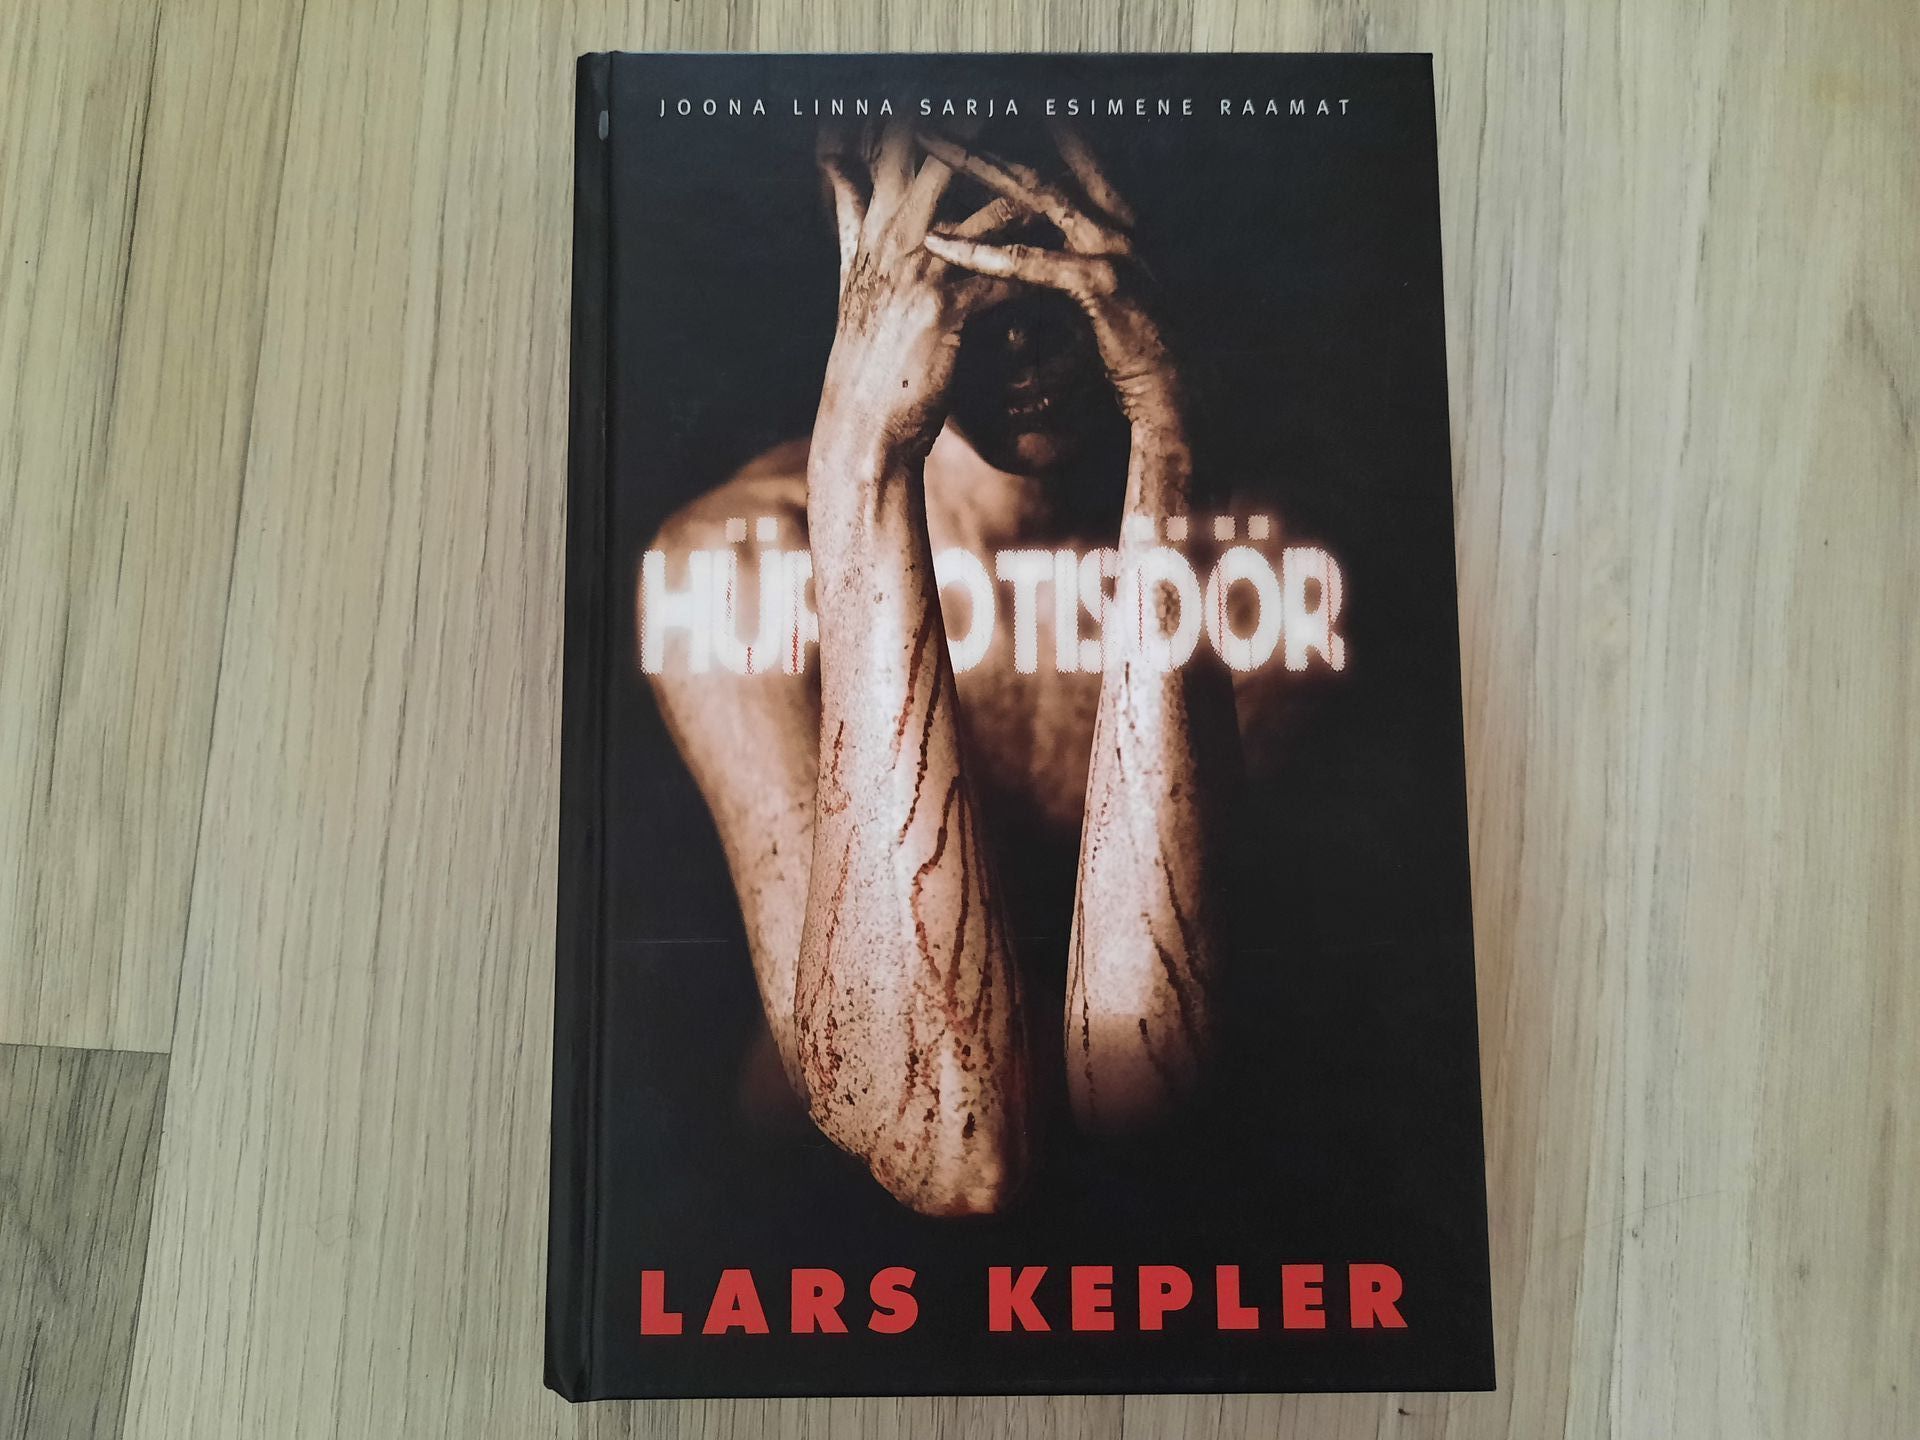 Lars Kepler, 